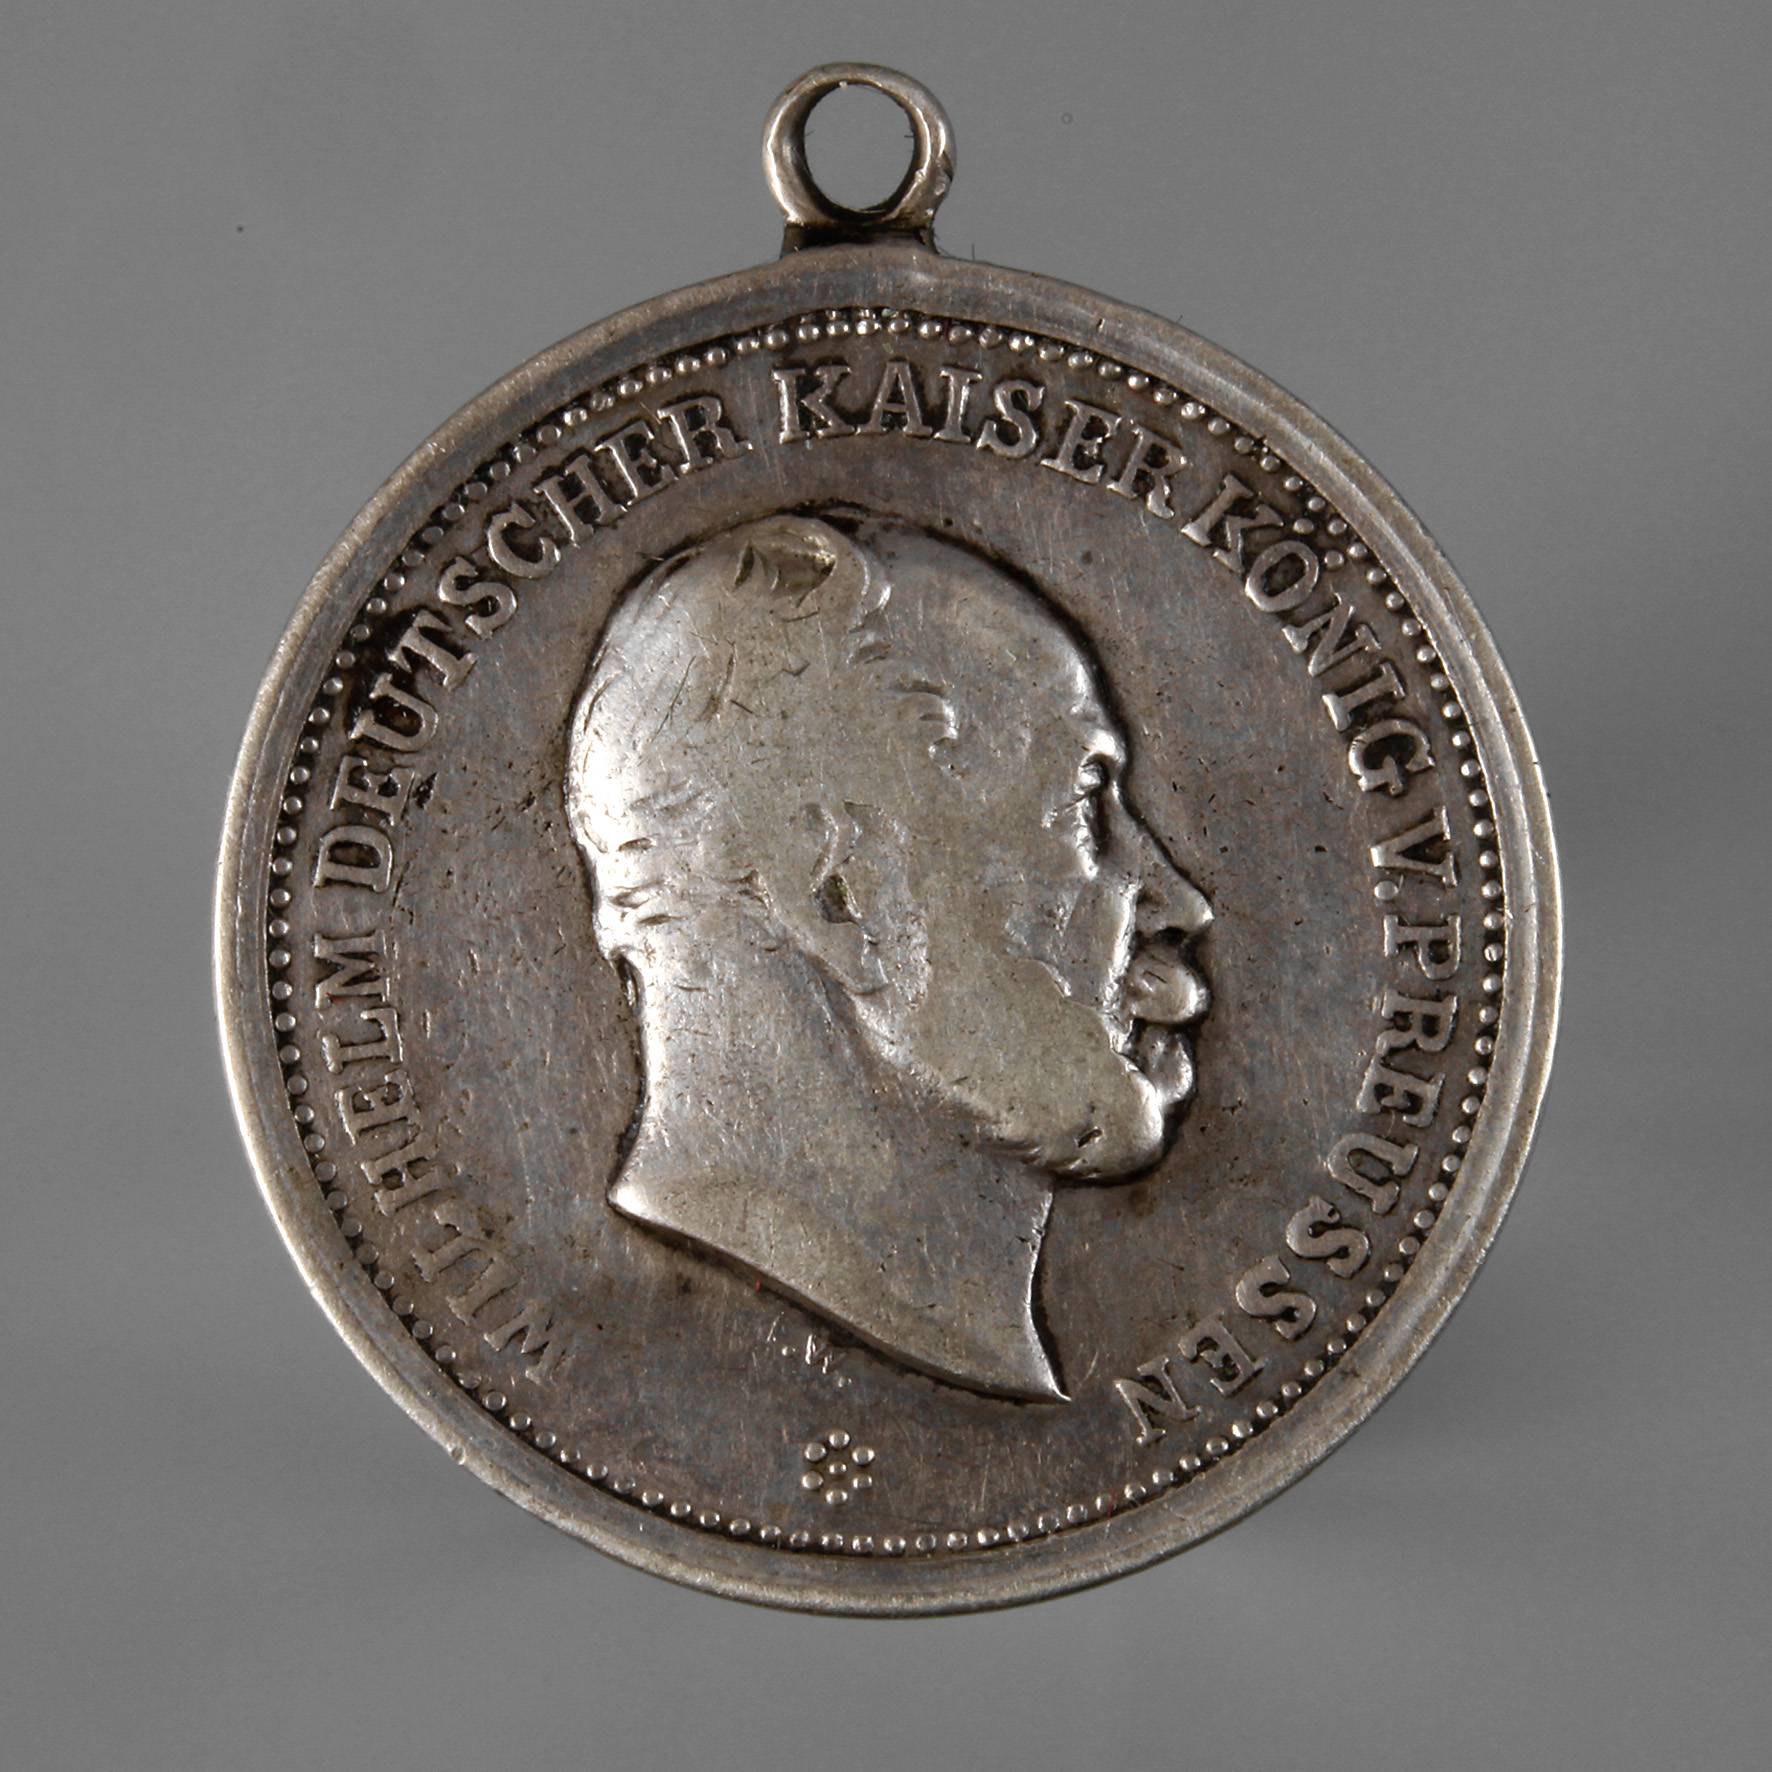 Medaille Preußen